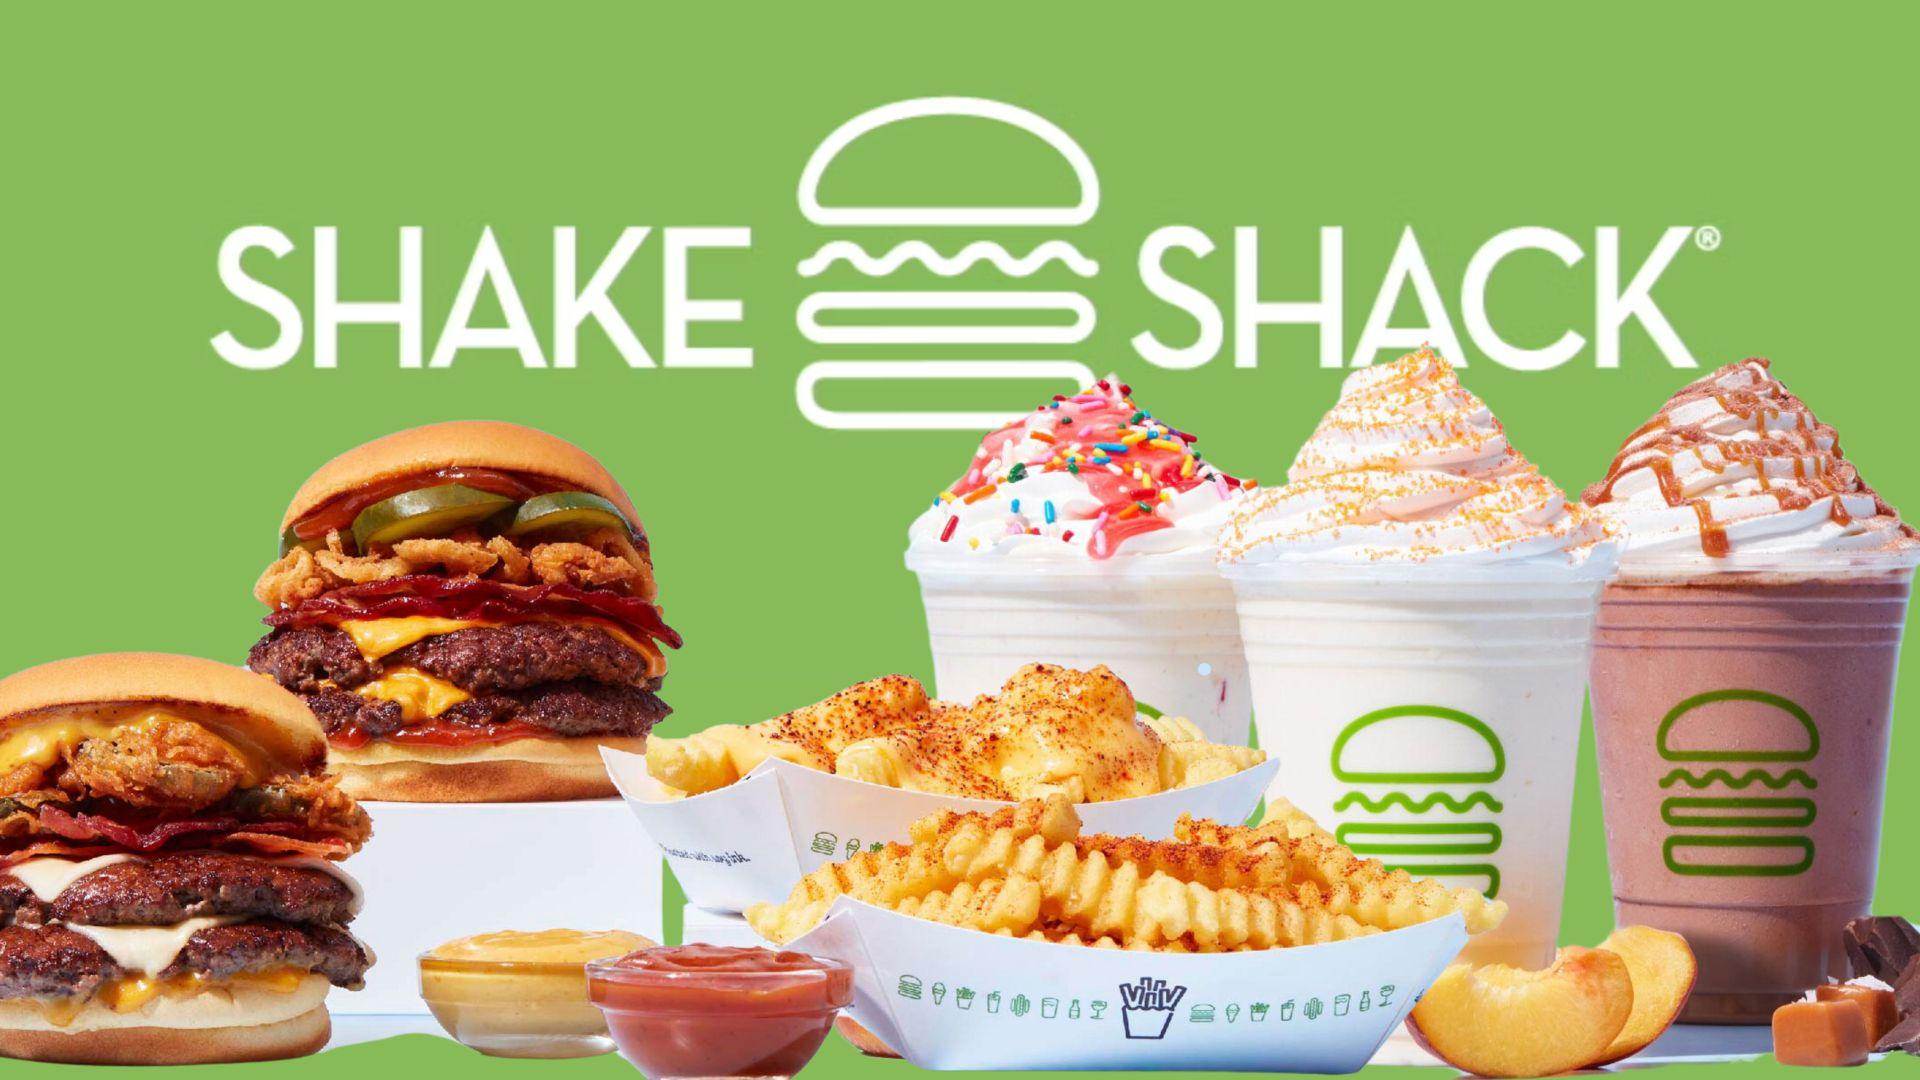 Shake shack new menu and logo